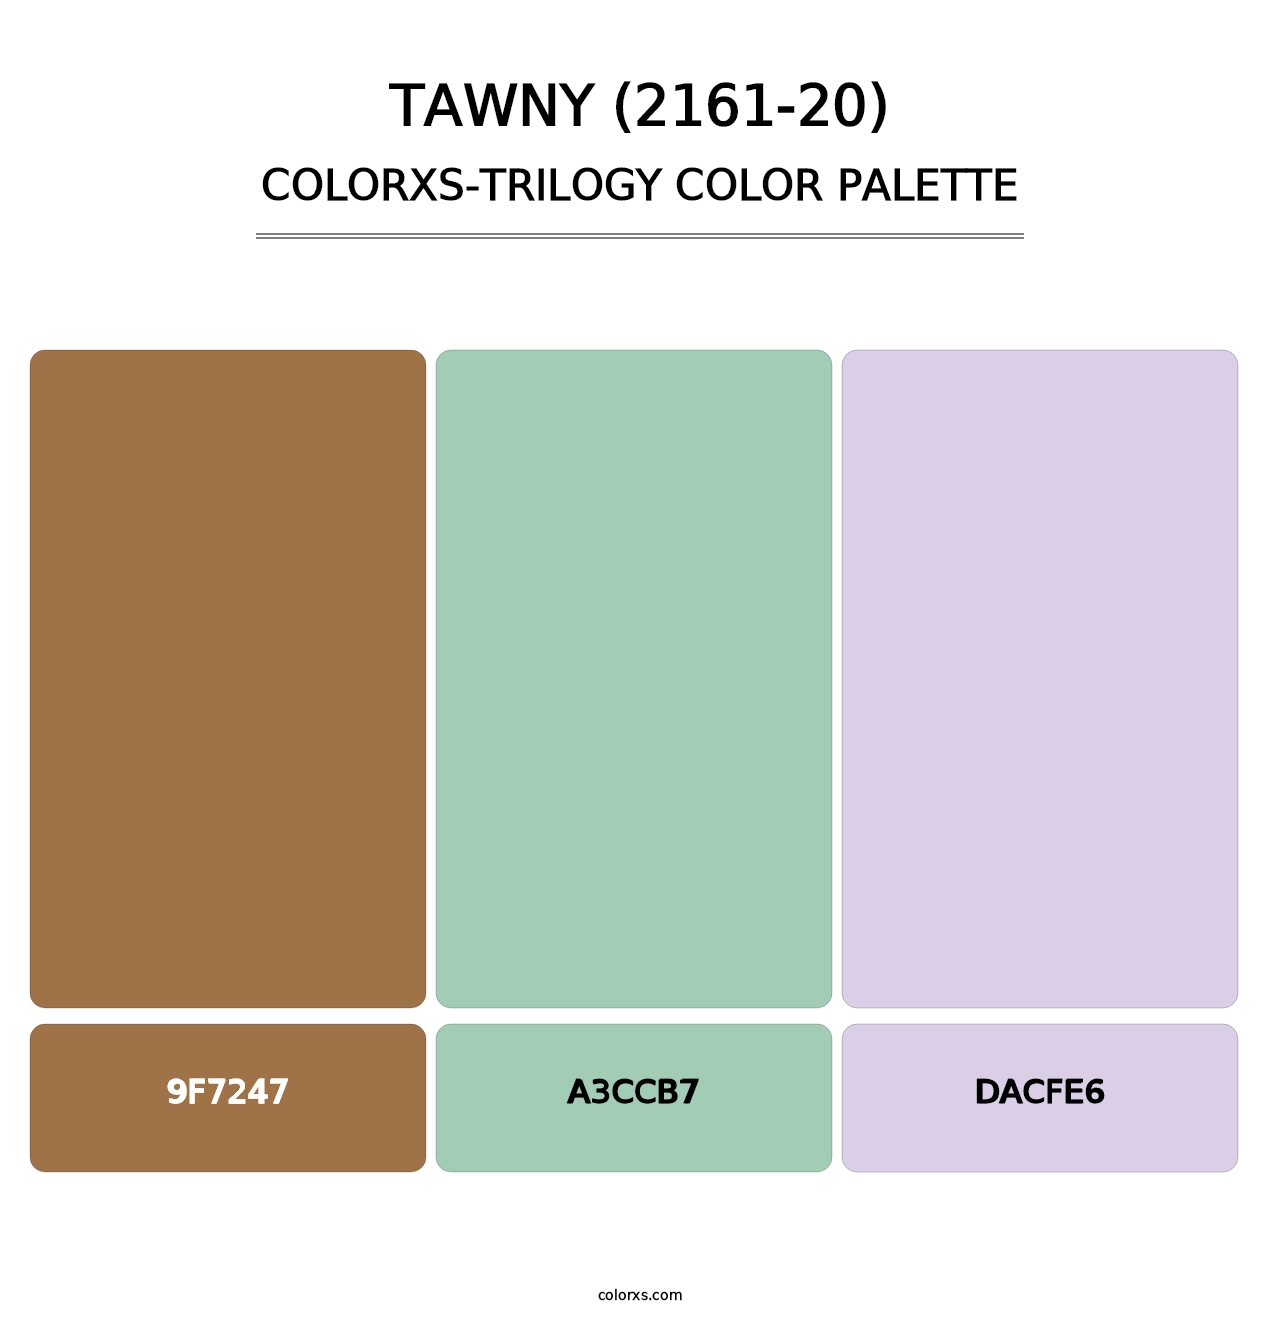 Tawny (2161-20) - Colorxs Trilogy Palette